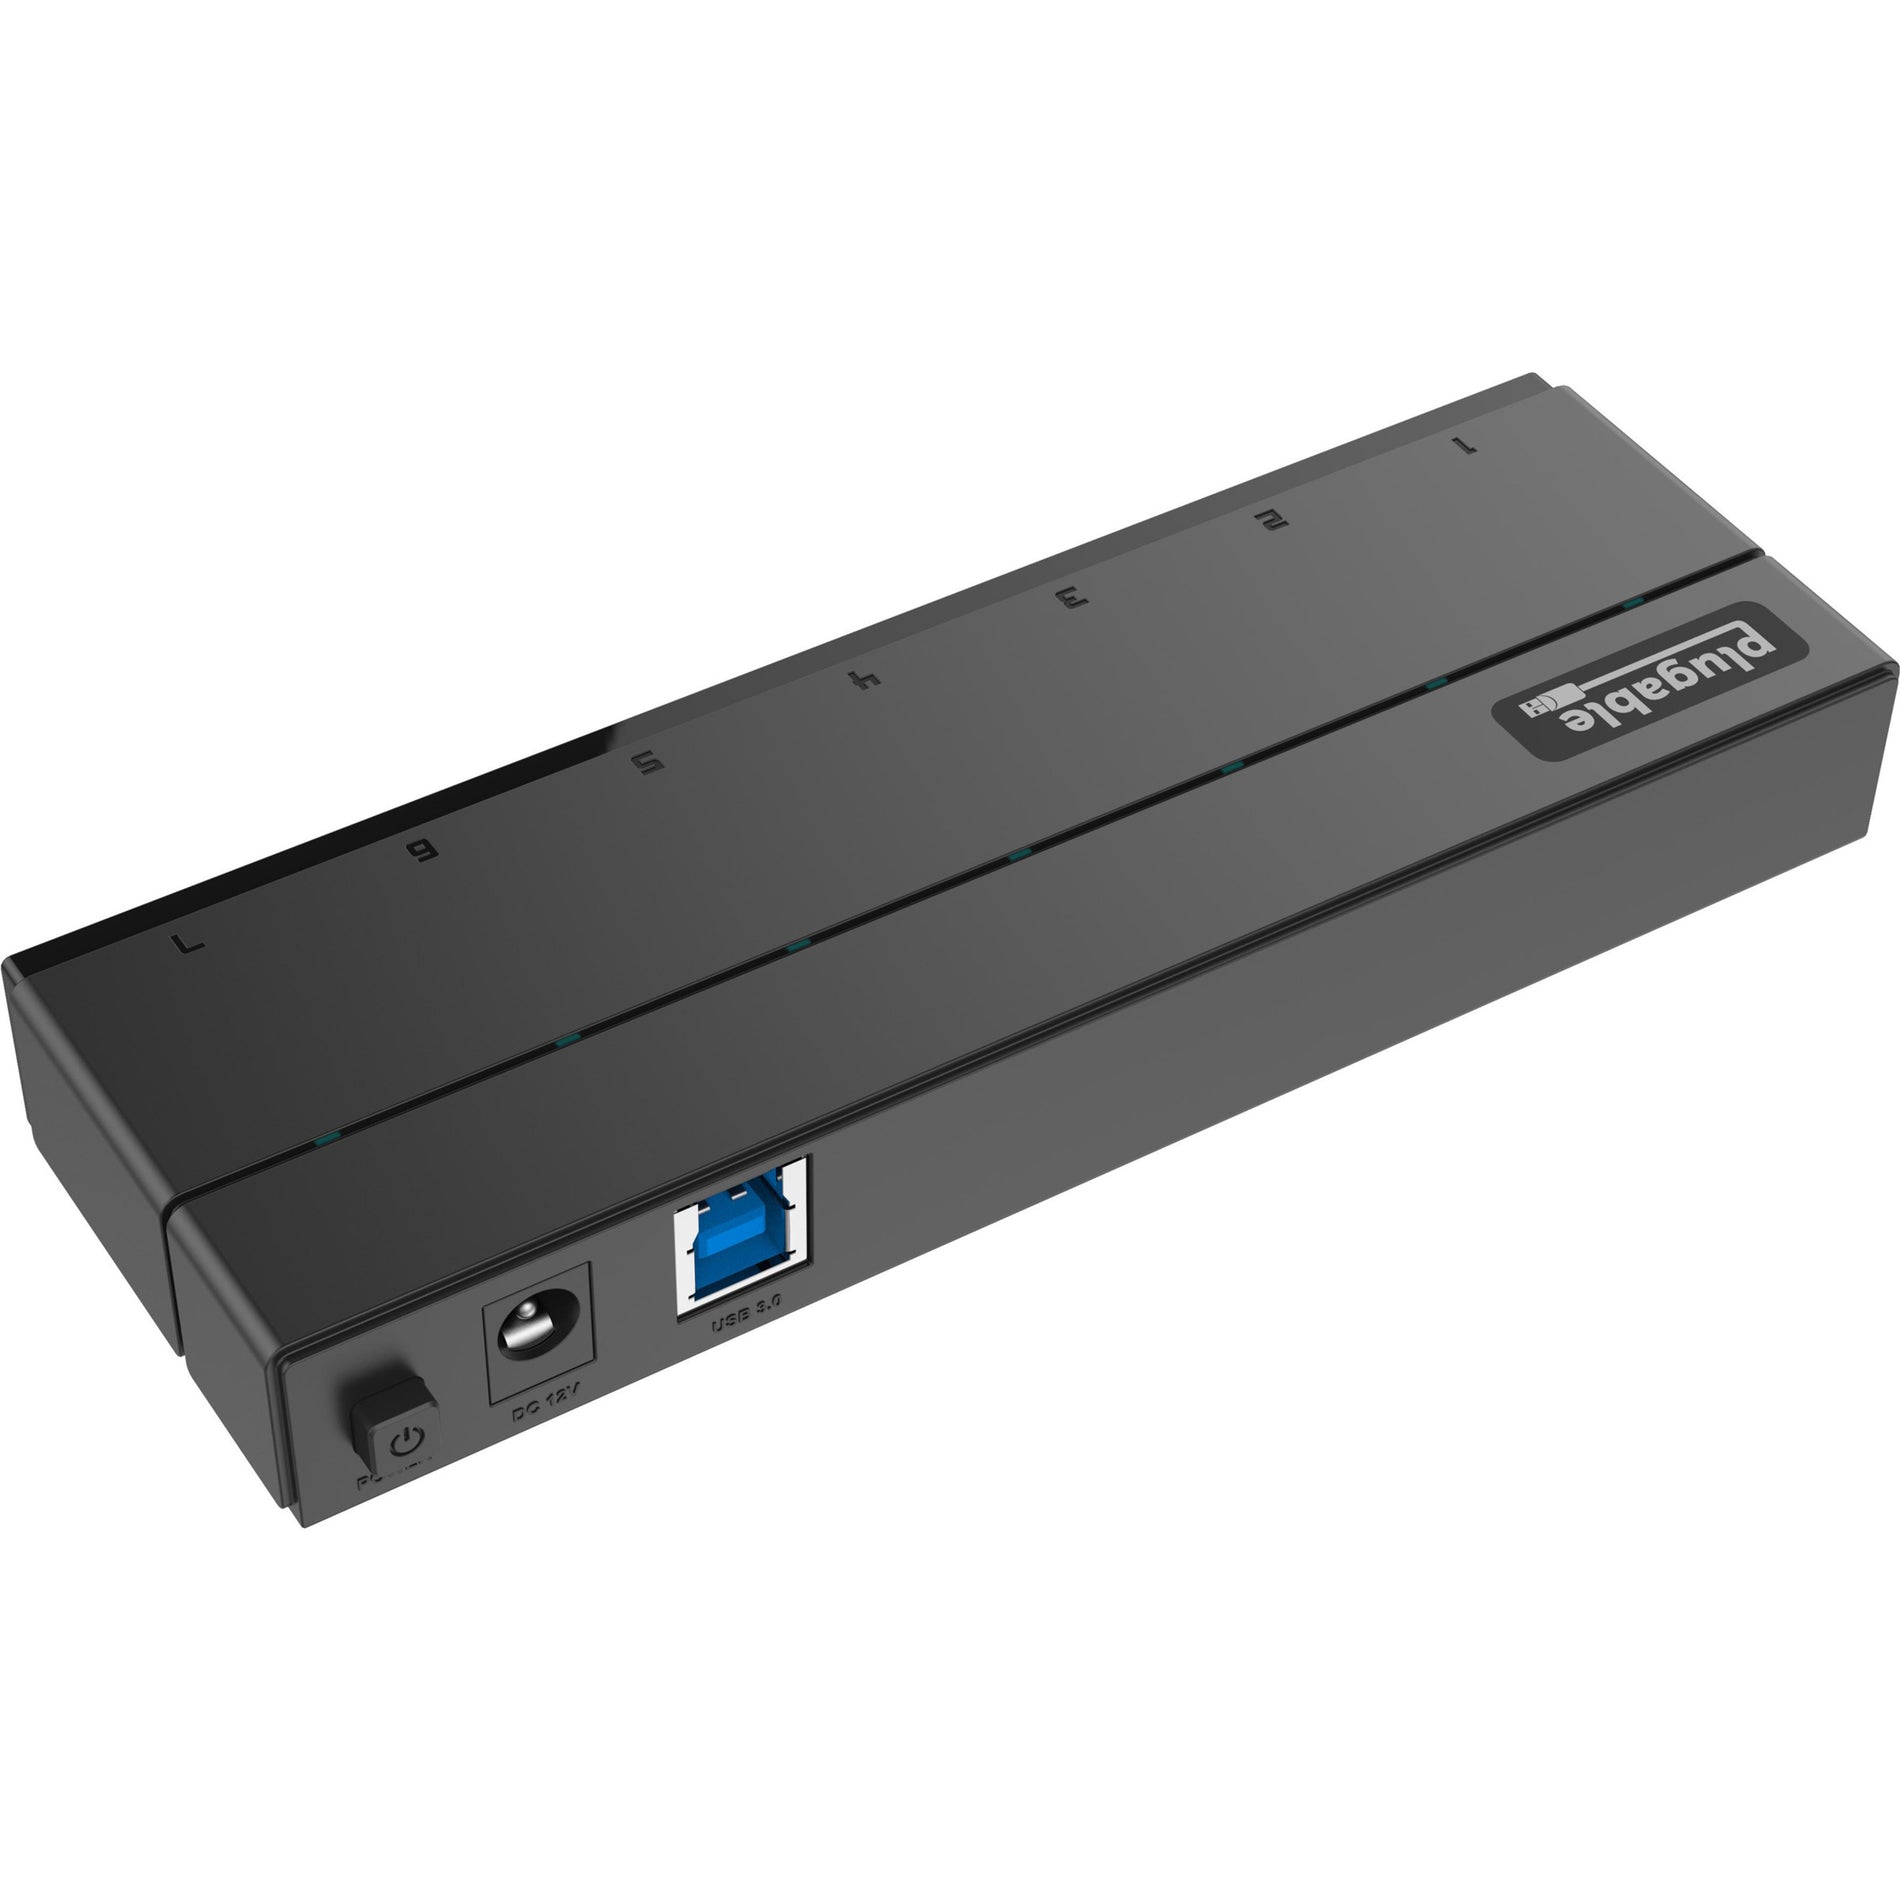 Concentrateur à 7 ports USB Plugable USB3-HUB7C USB 3.0 avec adaptateur secteur 36W Élargissez votre connectivité USB